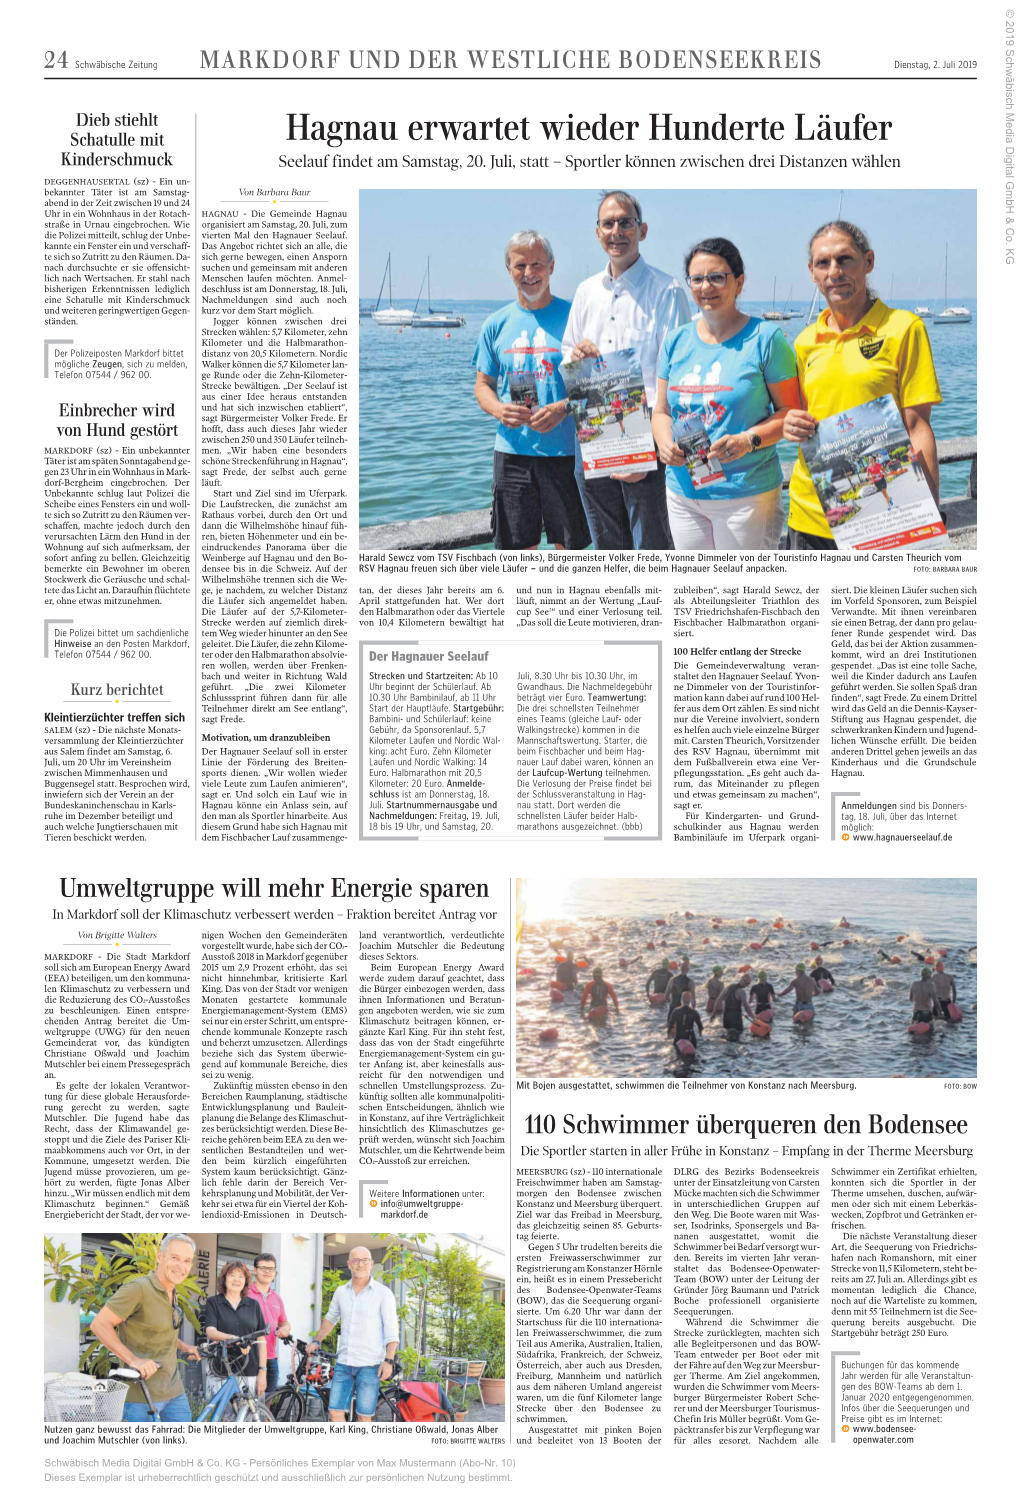 Hagnau Erwartet Wieder Hunderte Läufer Kinderschmuck Seelauf Findet Am Samstag, 20